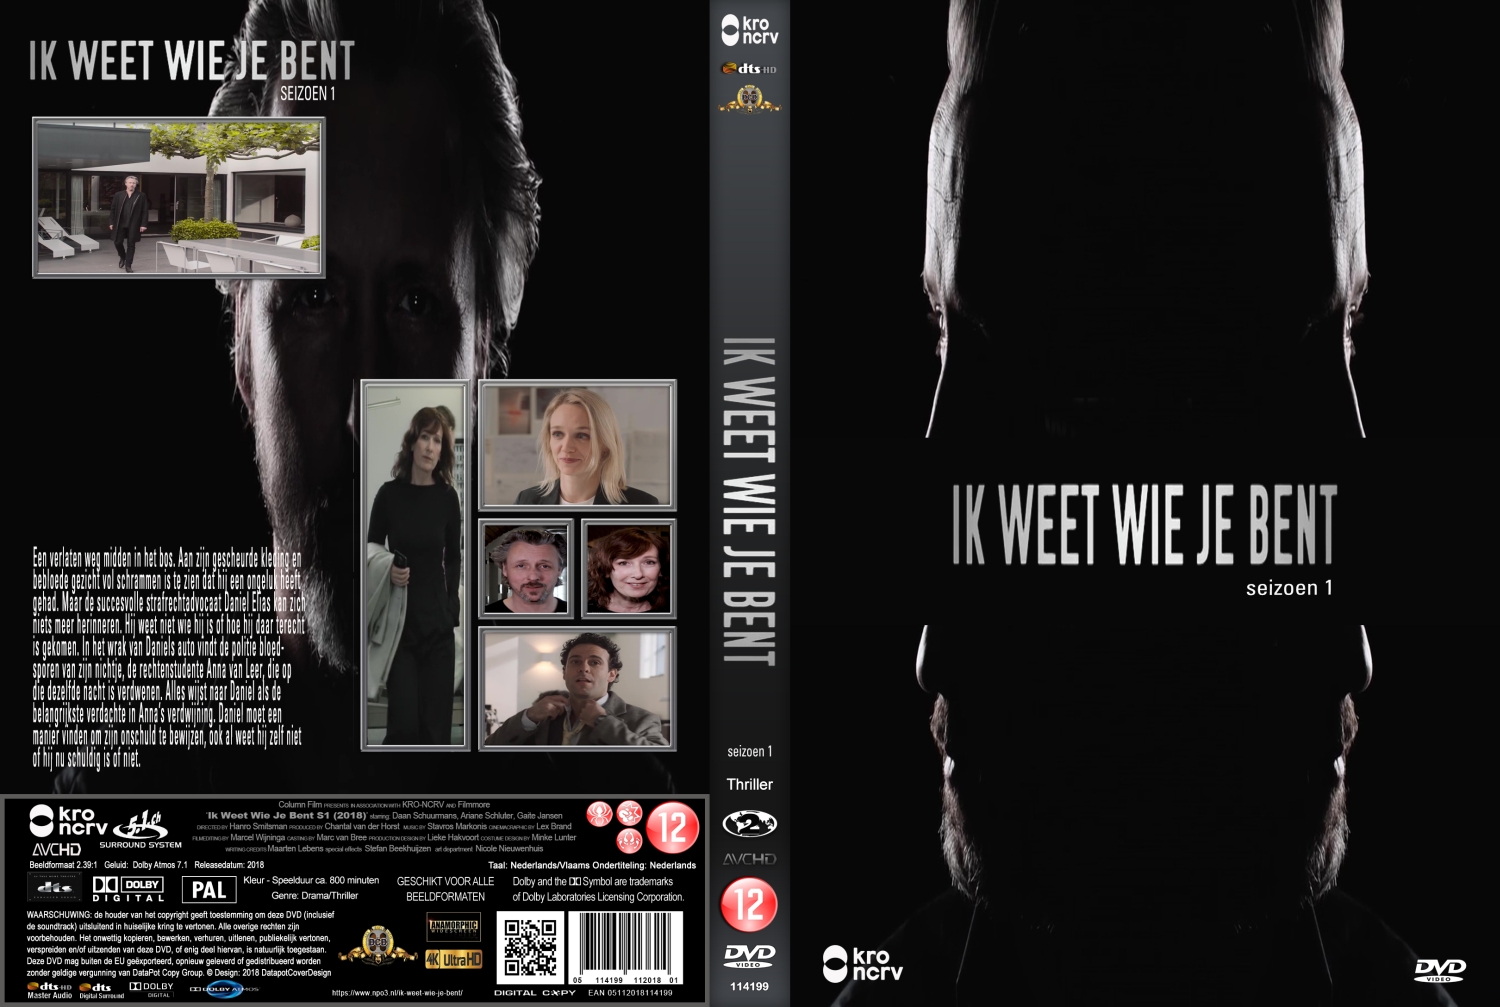 REPOST Ik Weet Wie Je Bent (2018) - DvD 3